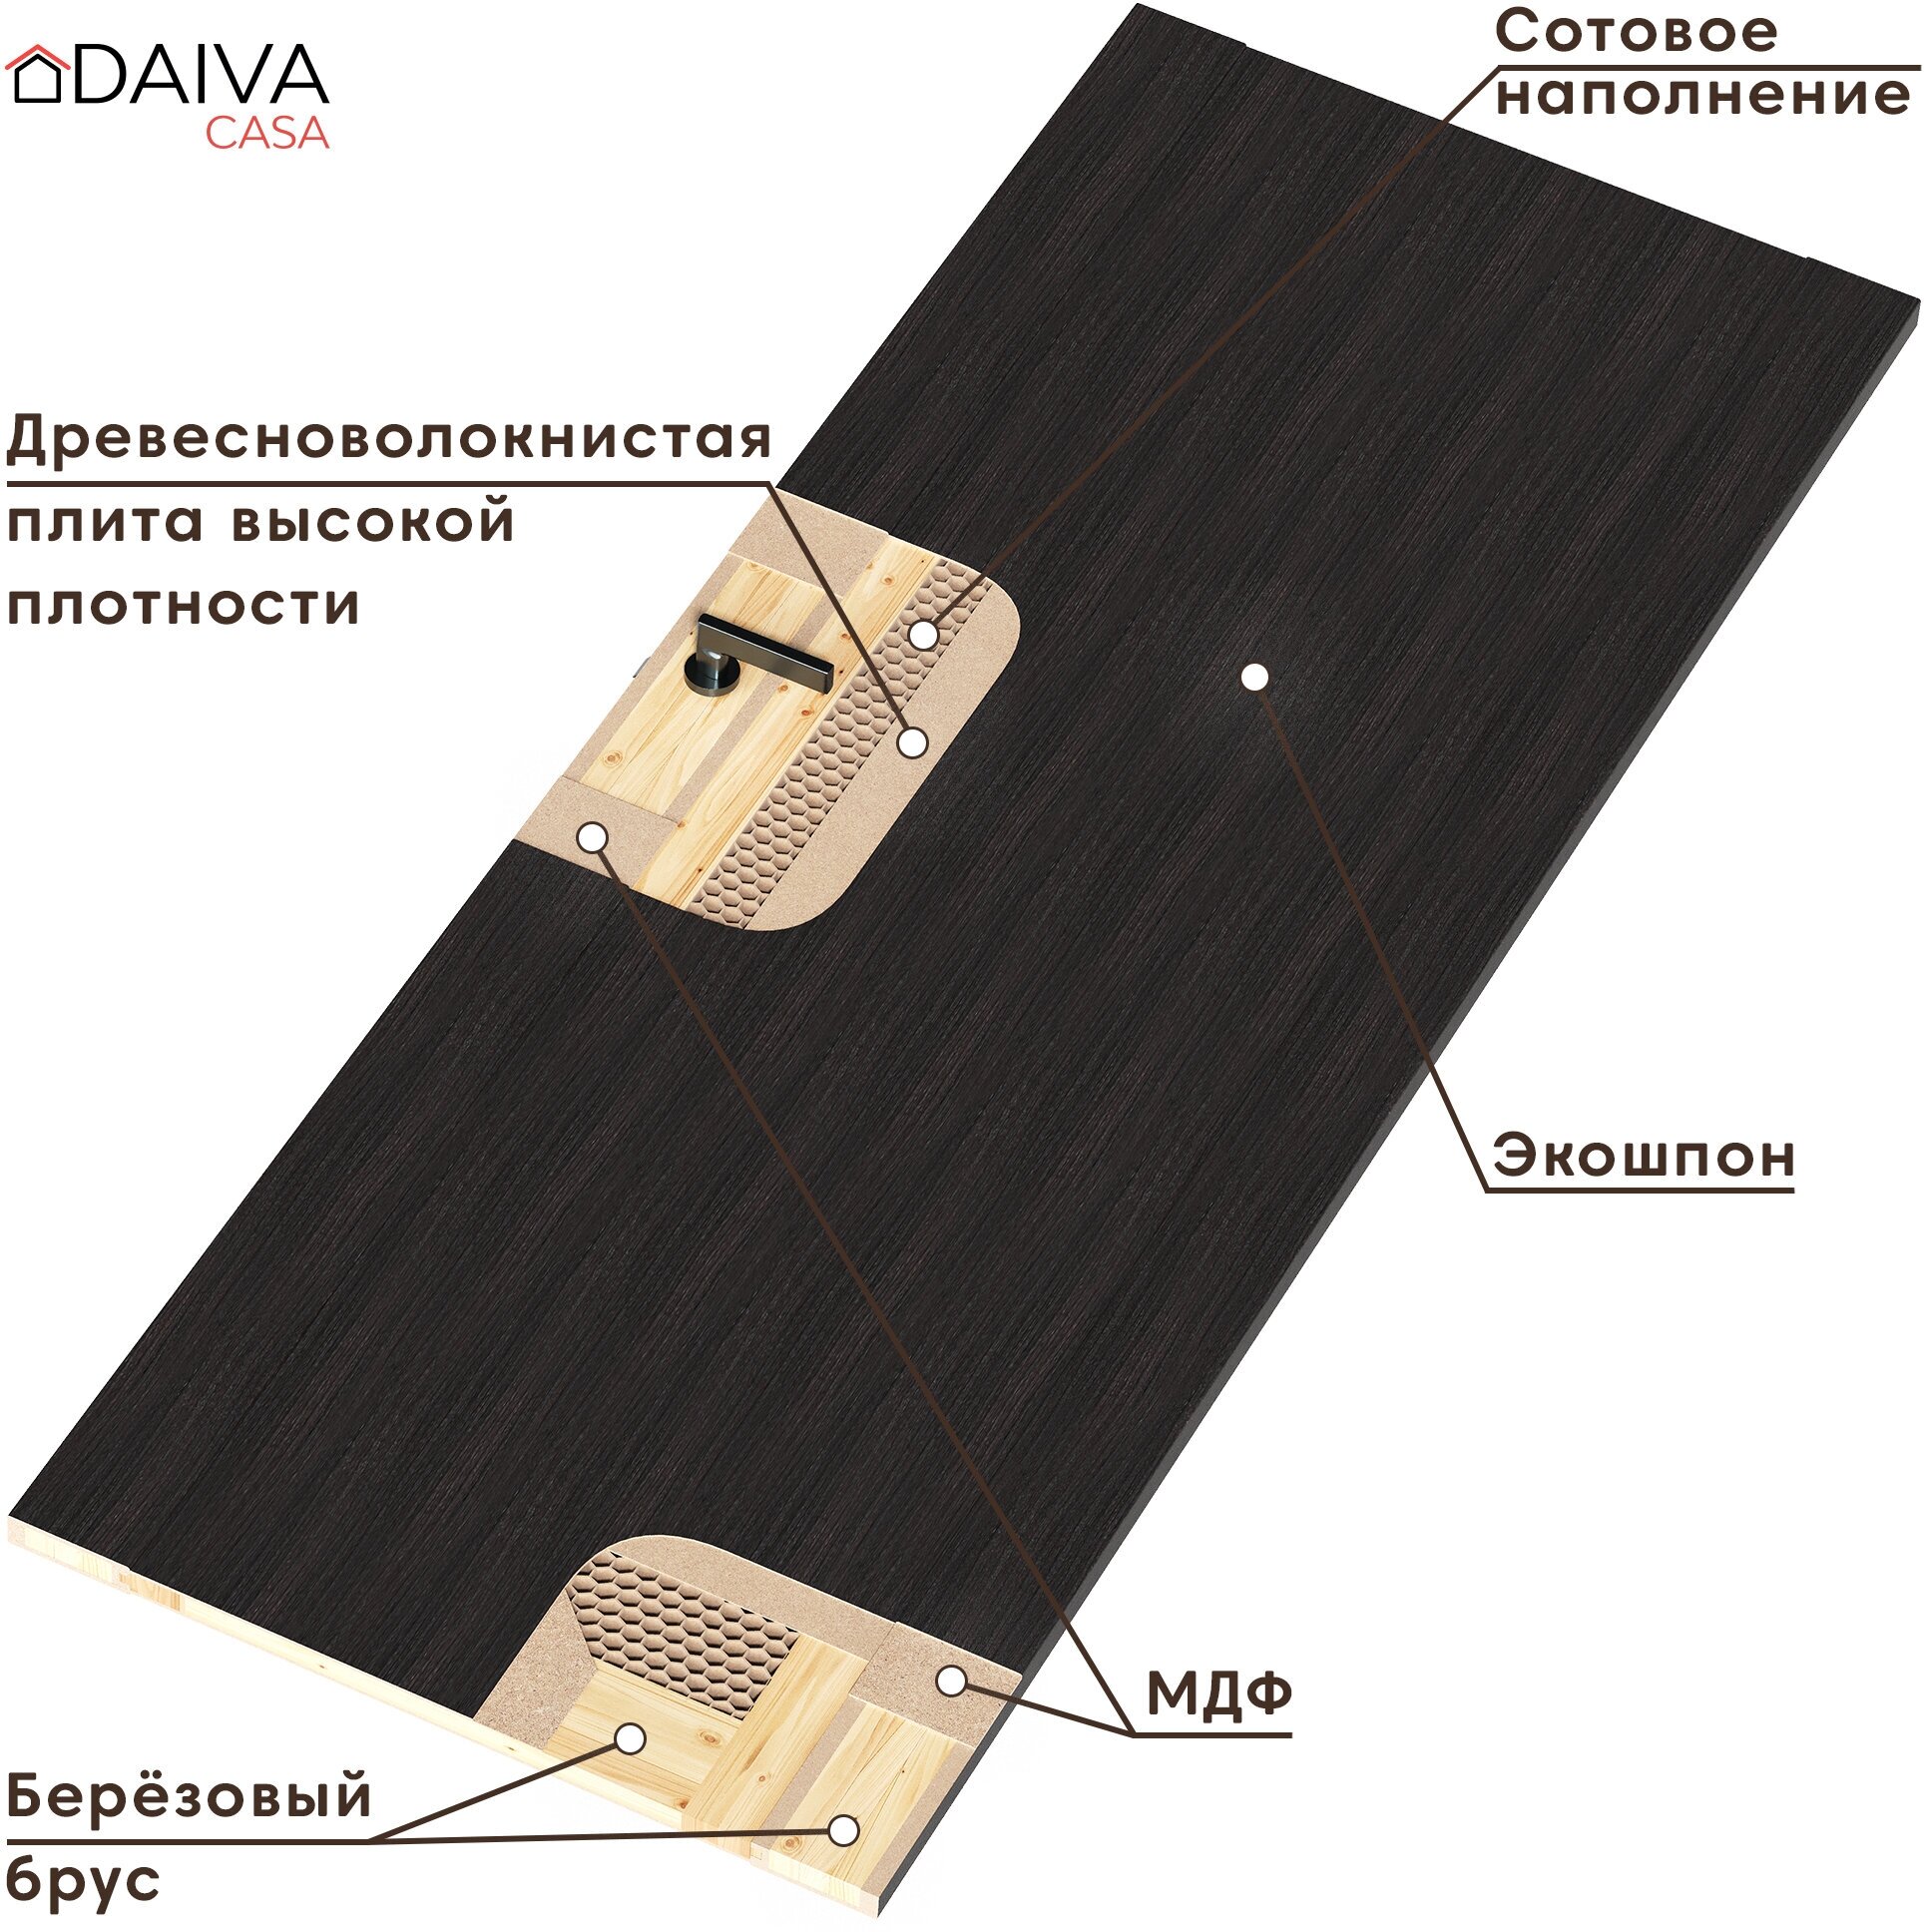 Межкомнатная дверь DAIVA casa, цвет Каньон Браун, 2000х800 мм, Bolivar (комплект: полотно, коробка, наличник) - фотография № 5